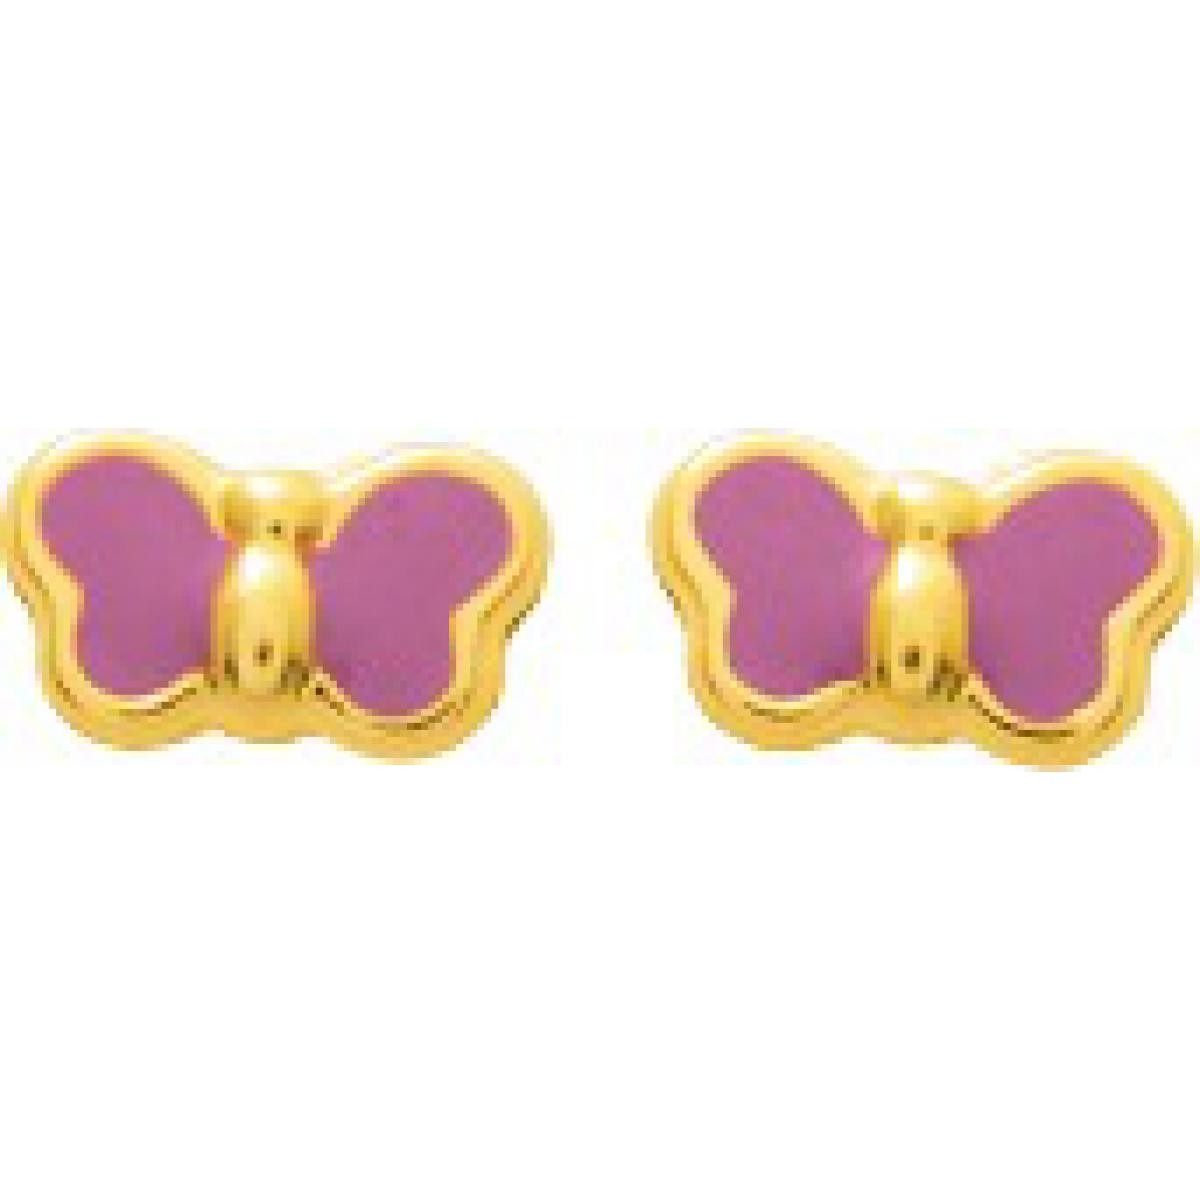 Boucles d'oreilles Papillons laque Or 375/1000 jaune forme originale colorée à vis (9K)